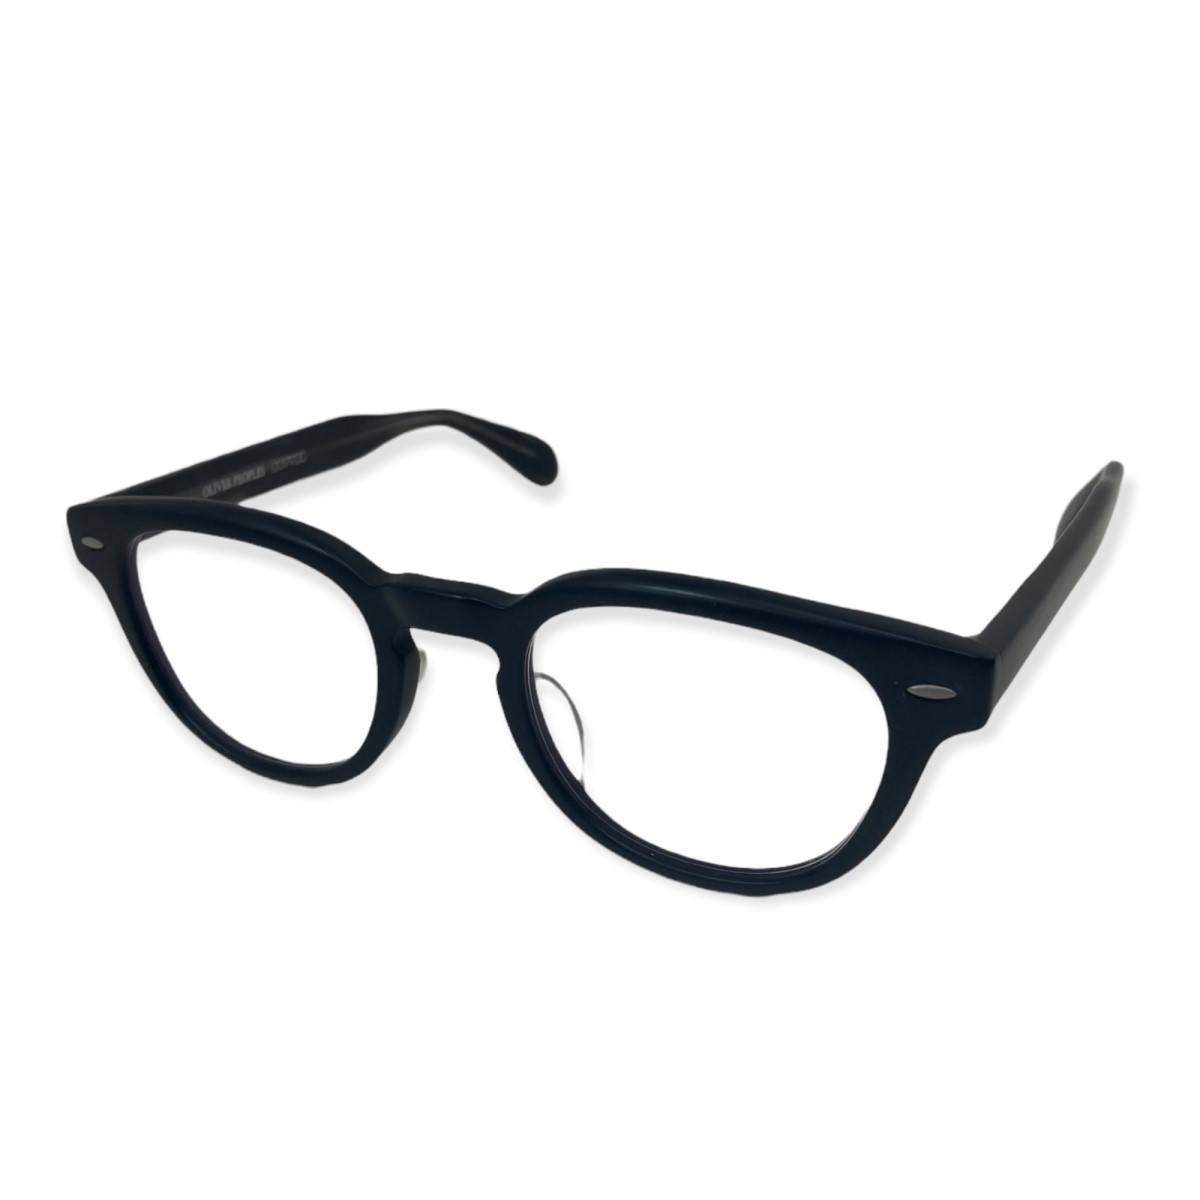 楽天市場】【中古】OLIVER PEOPLES 「Sheldrake-J」眼鏡 ブラック